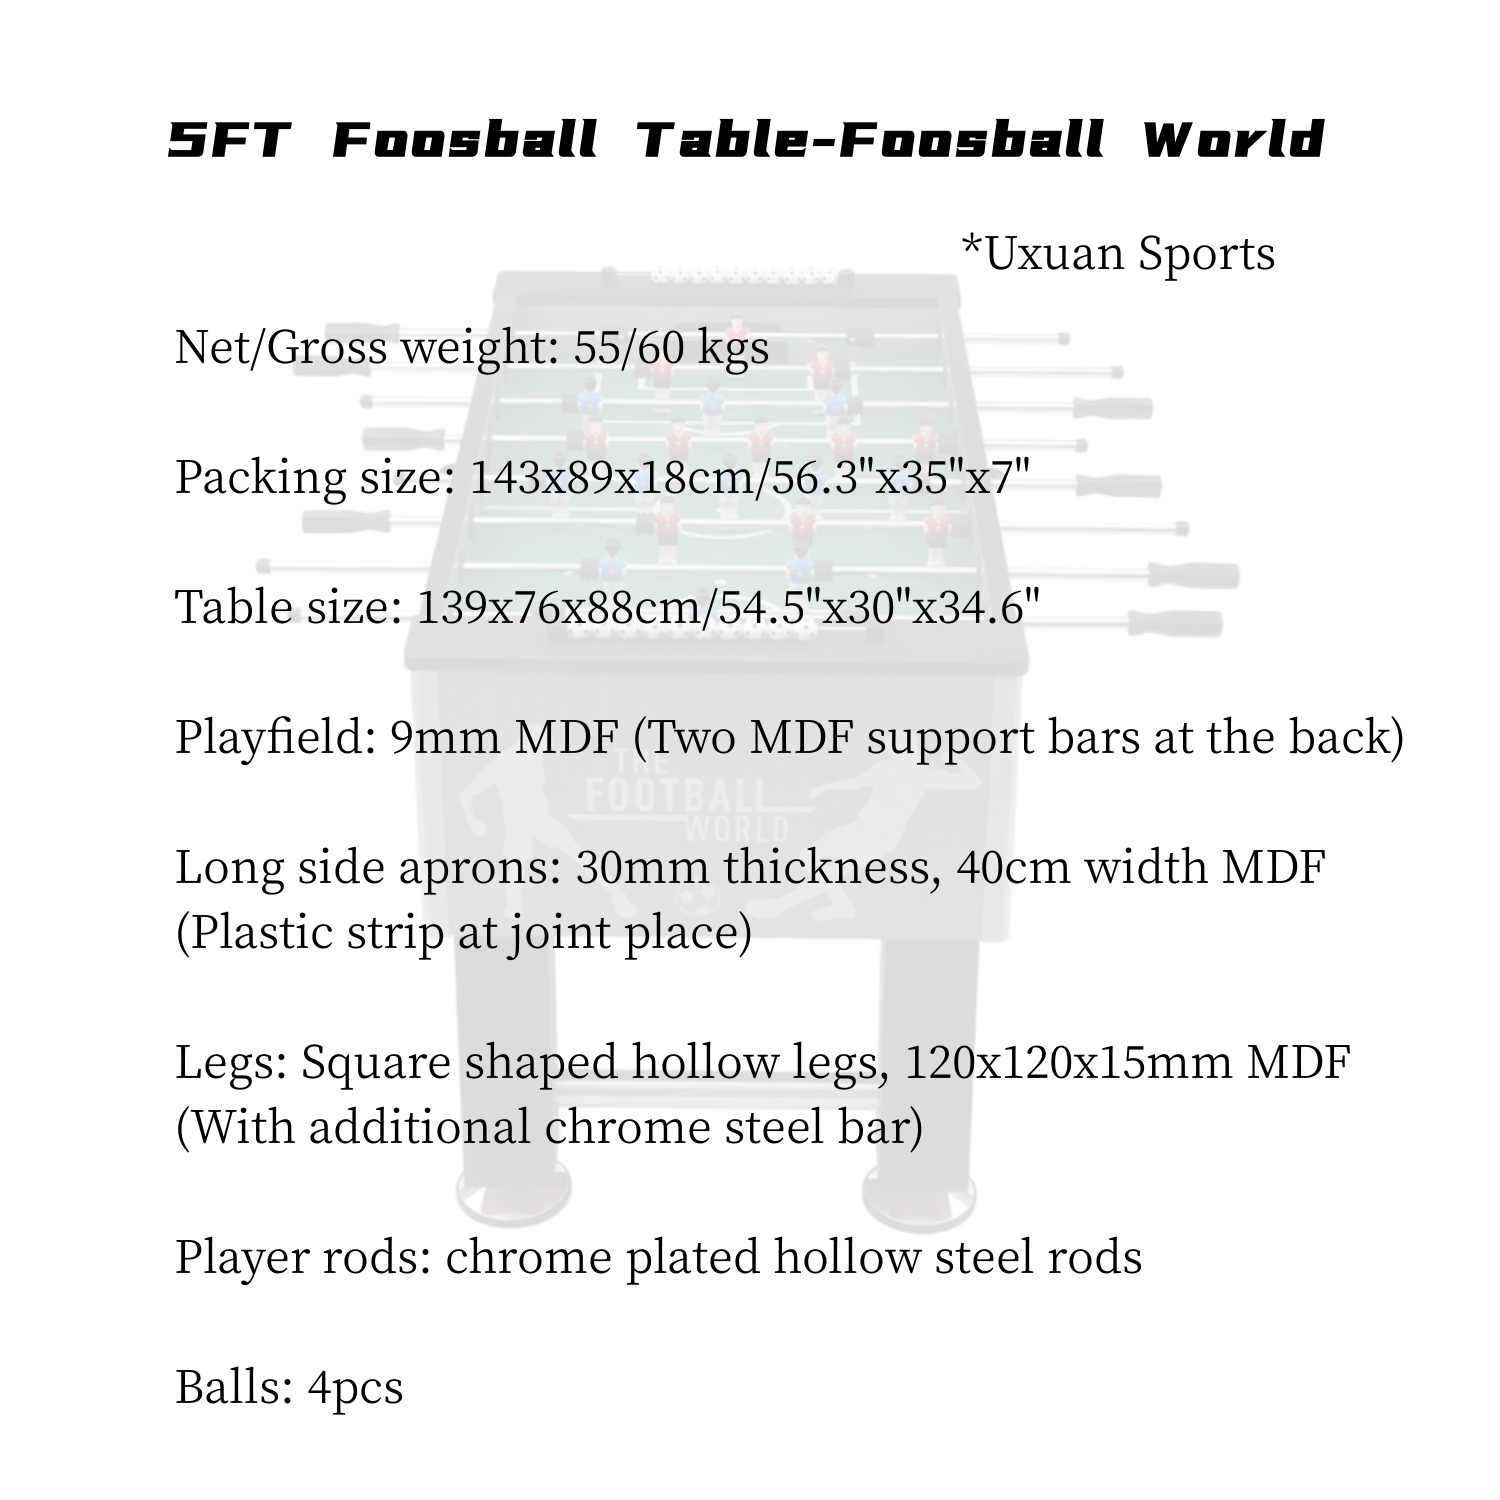 5FT Soccer Table-Foosball World